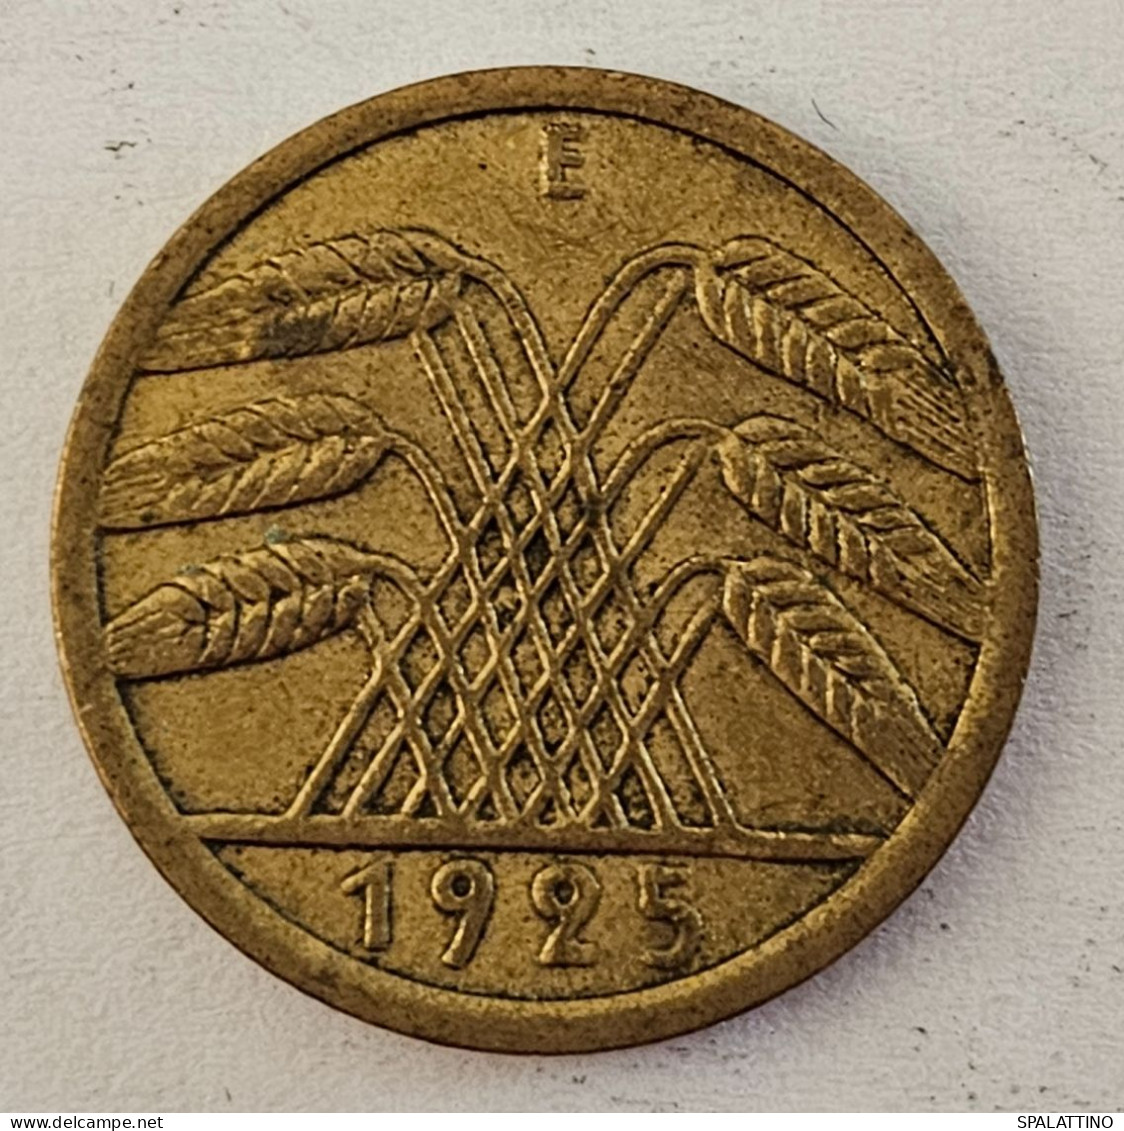 DEUTSCHES REICH- 5 REICHSPFENNIG 1925. E - 5 Rentenpfennig & 5 Reichspfennig